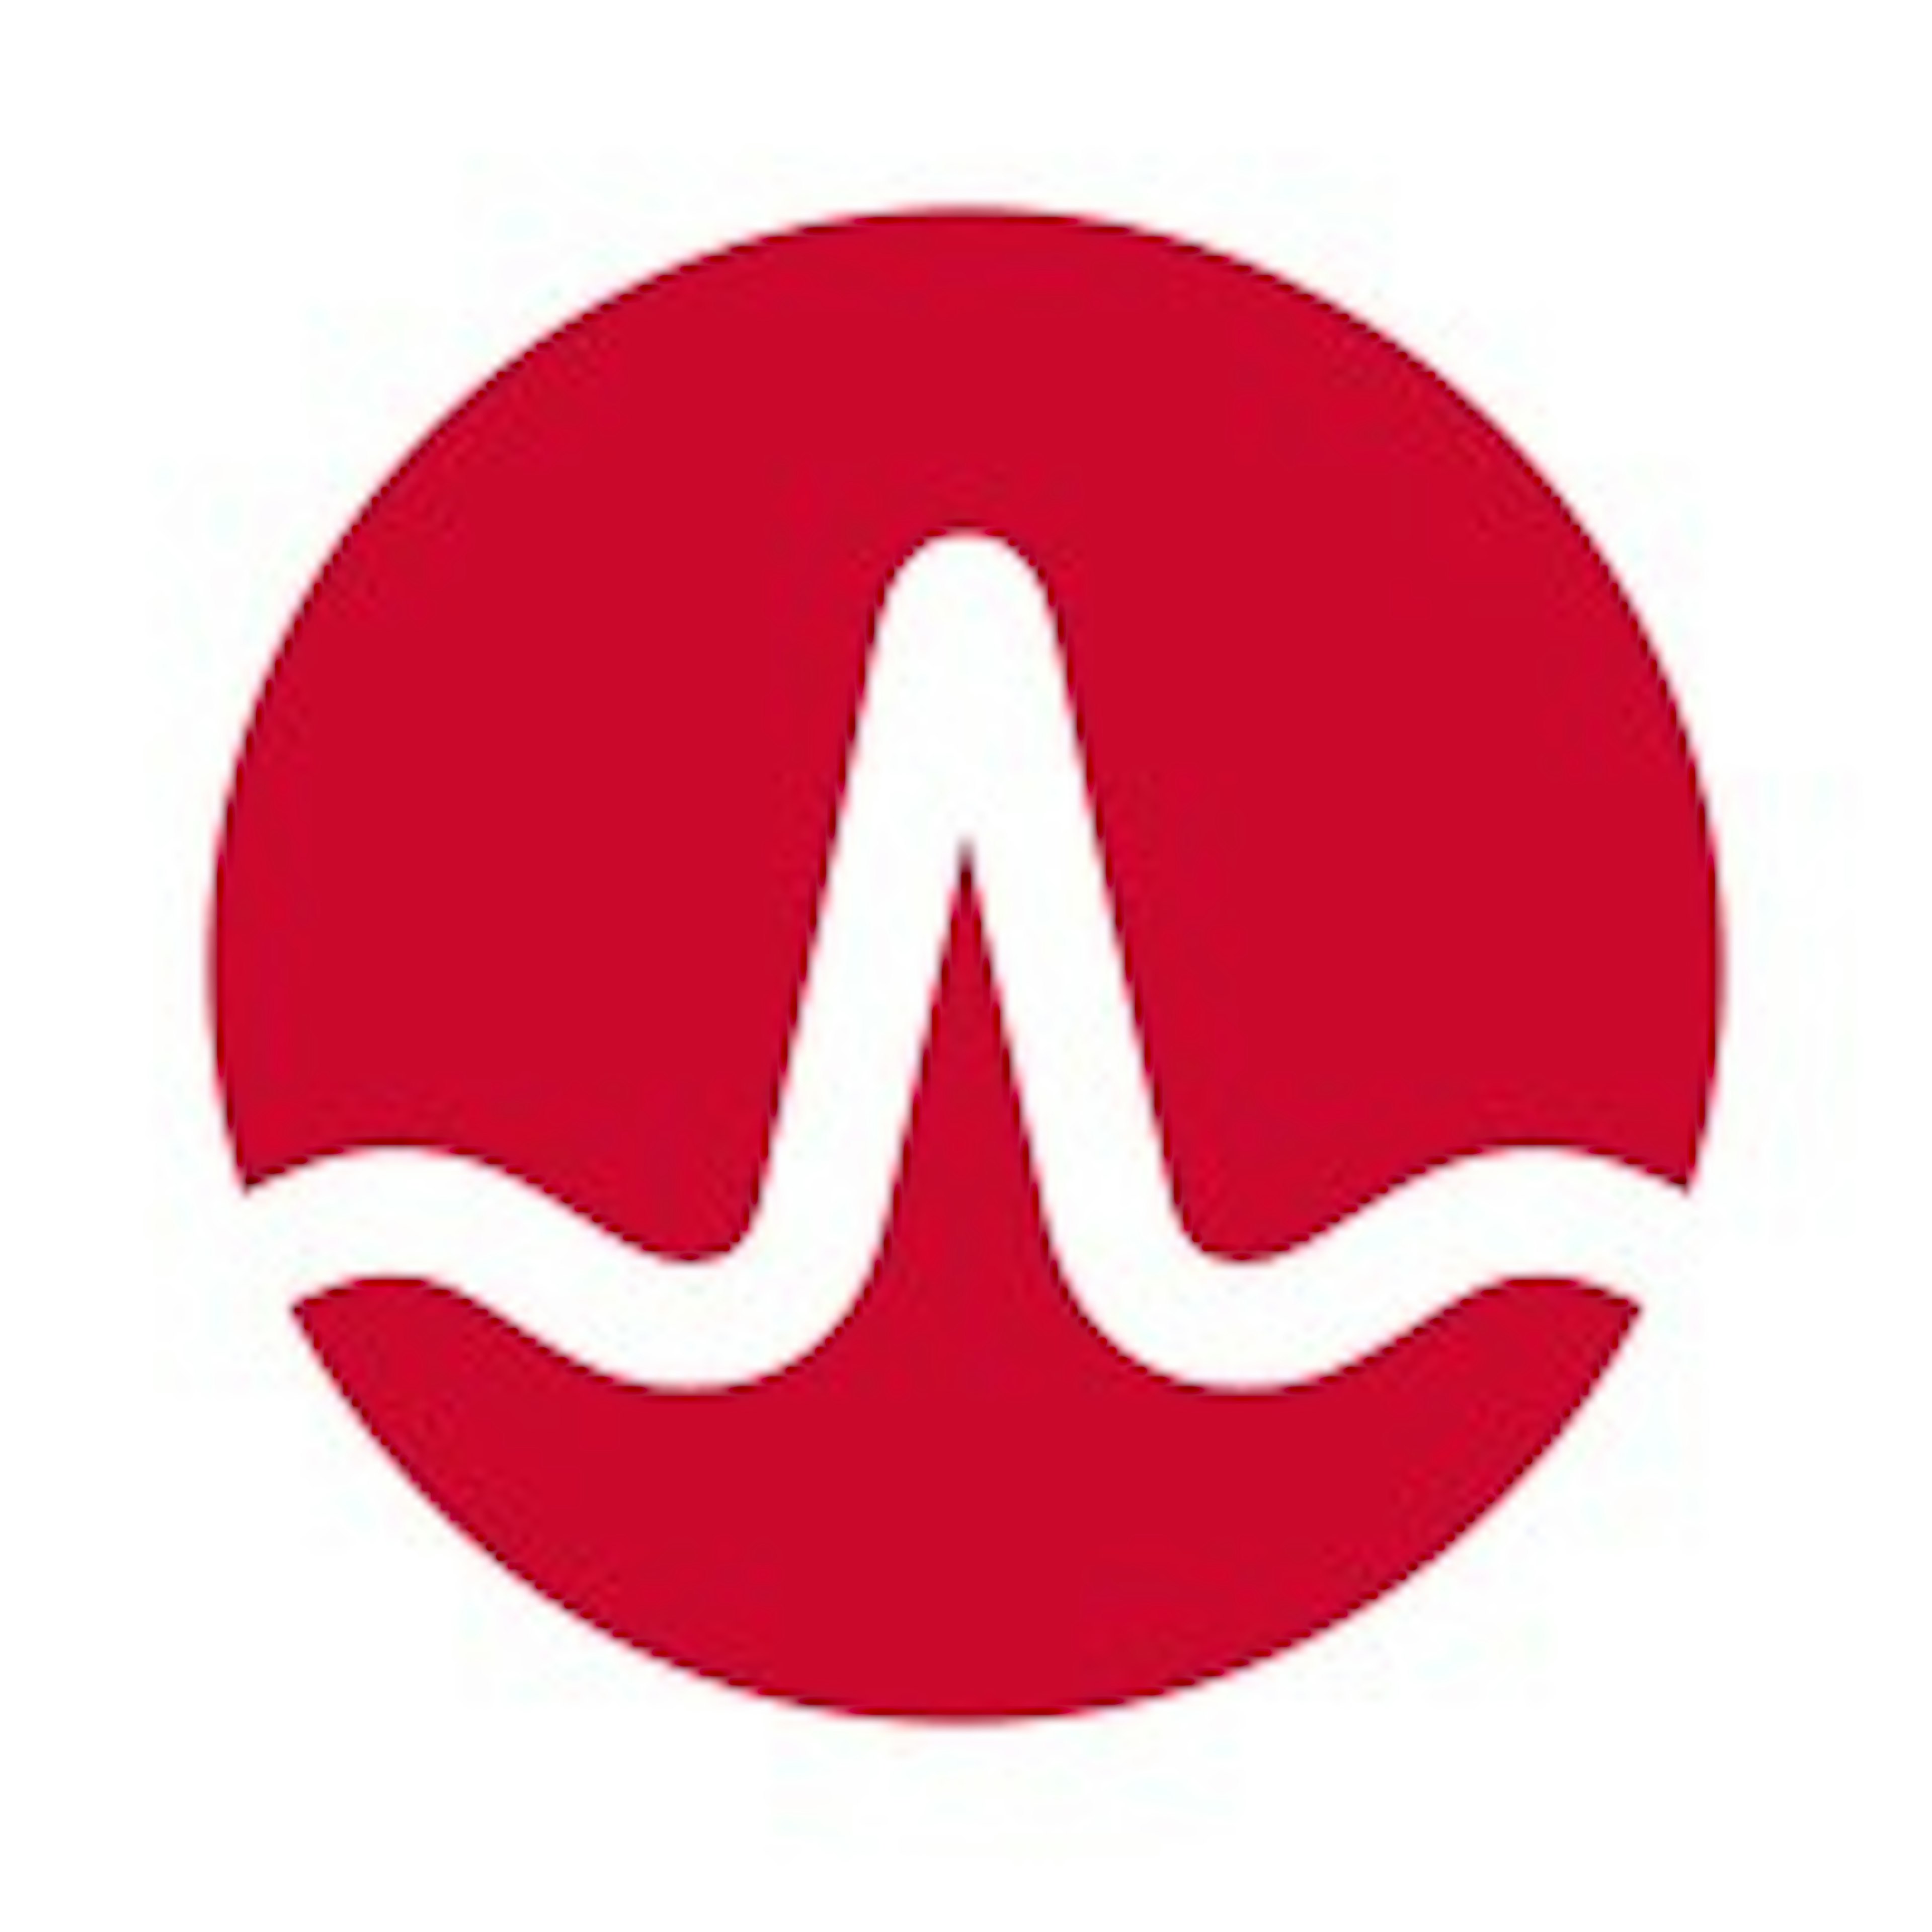 Flowdock Logo